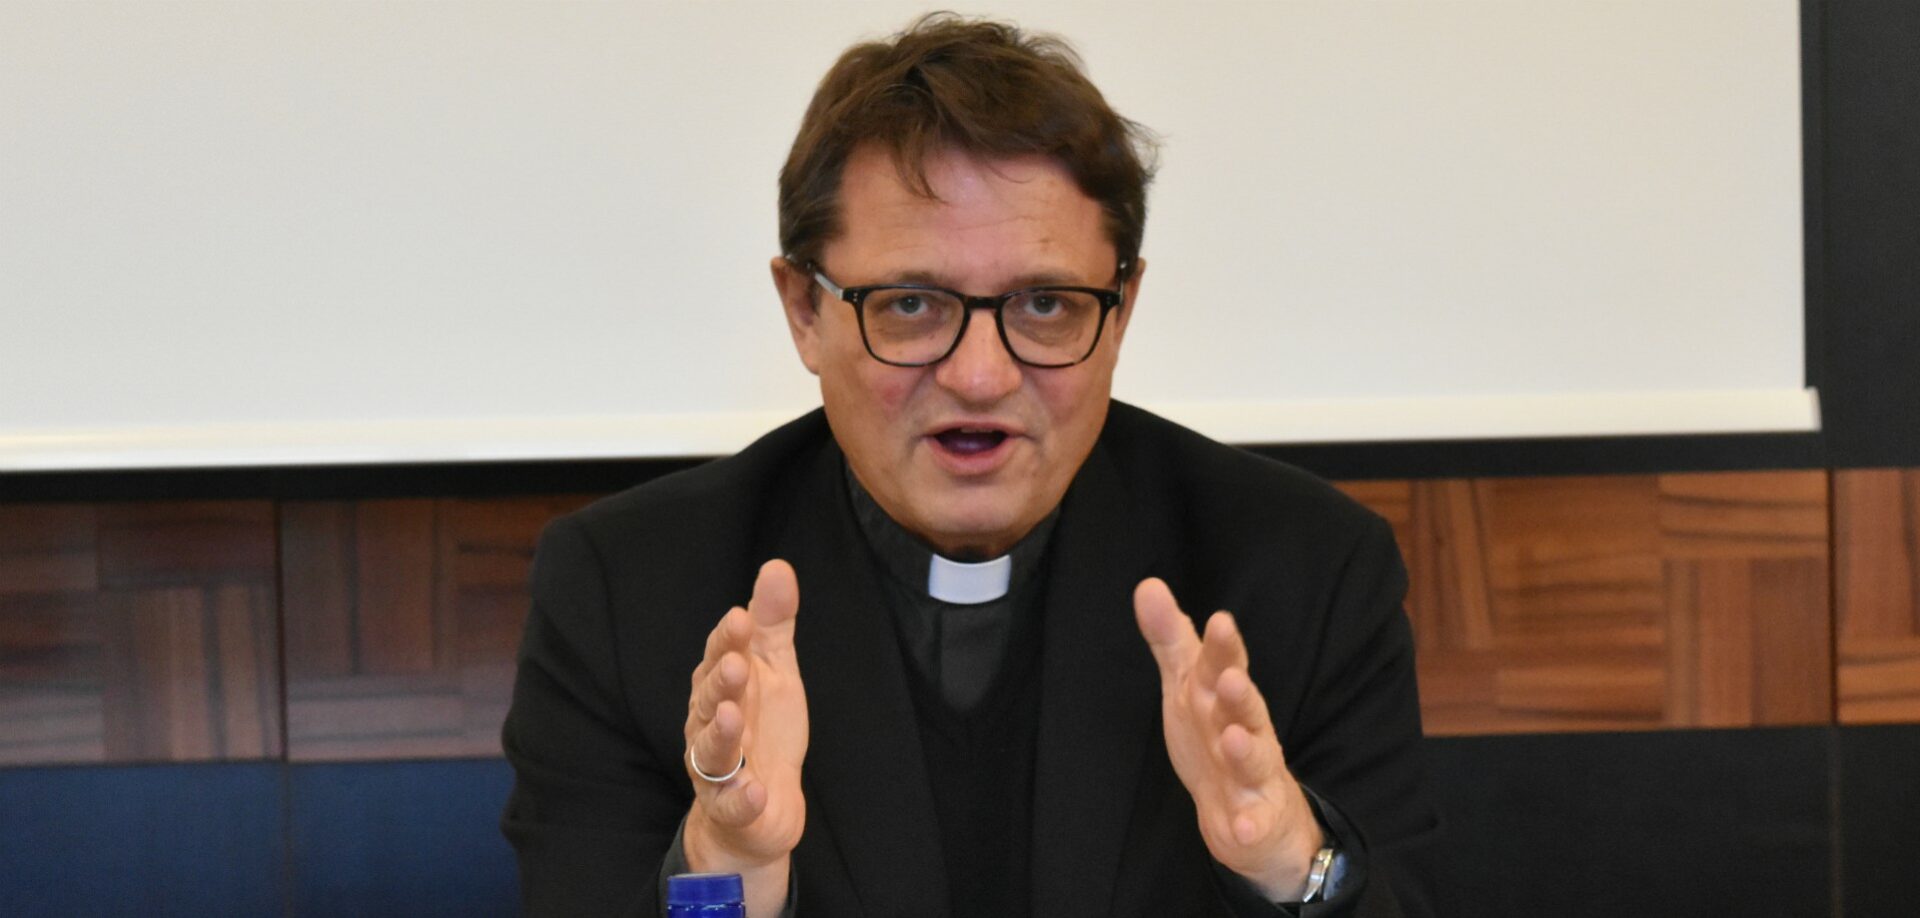 Mgr Felix Gmür, président de la Conférence des évêques suisses (CES) | © Jacques Berset   